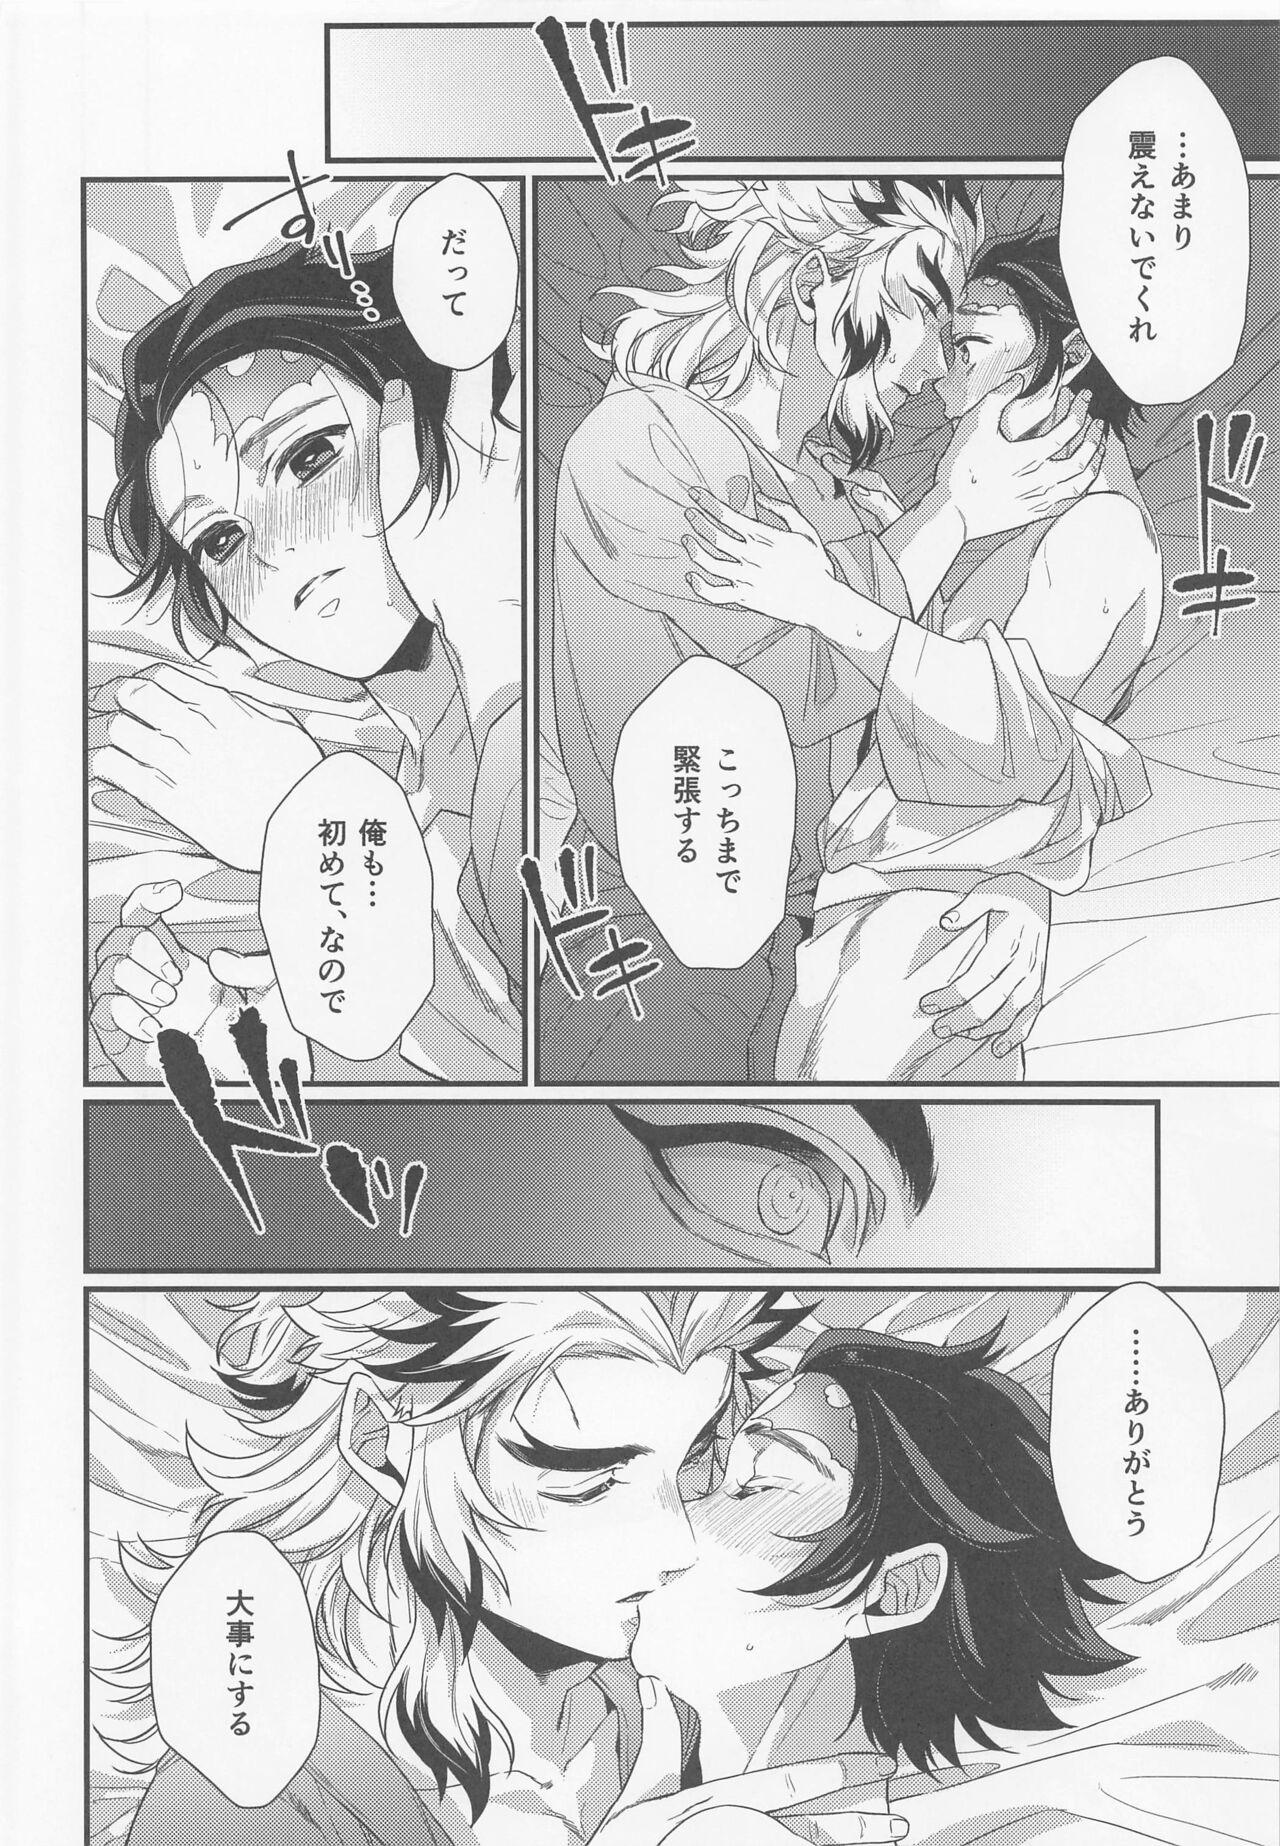 Small Tits sukida、shonen、daisukida - Kimetsu no yaiba | demon slayer Gay Party - Page 13